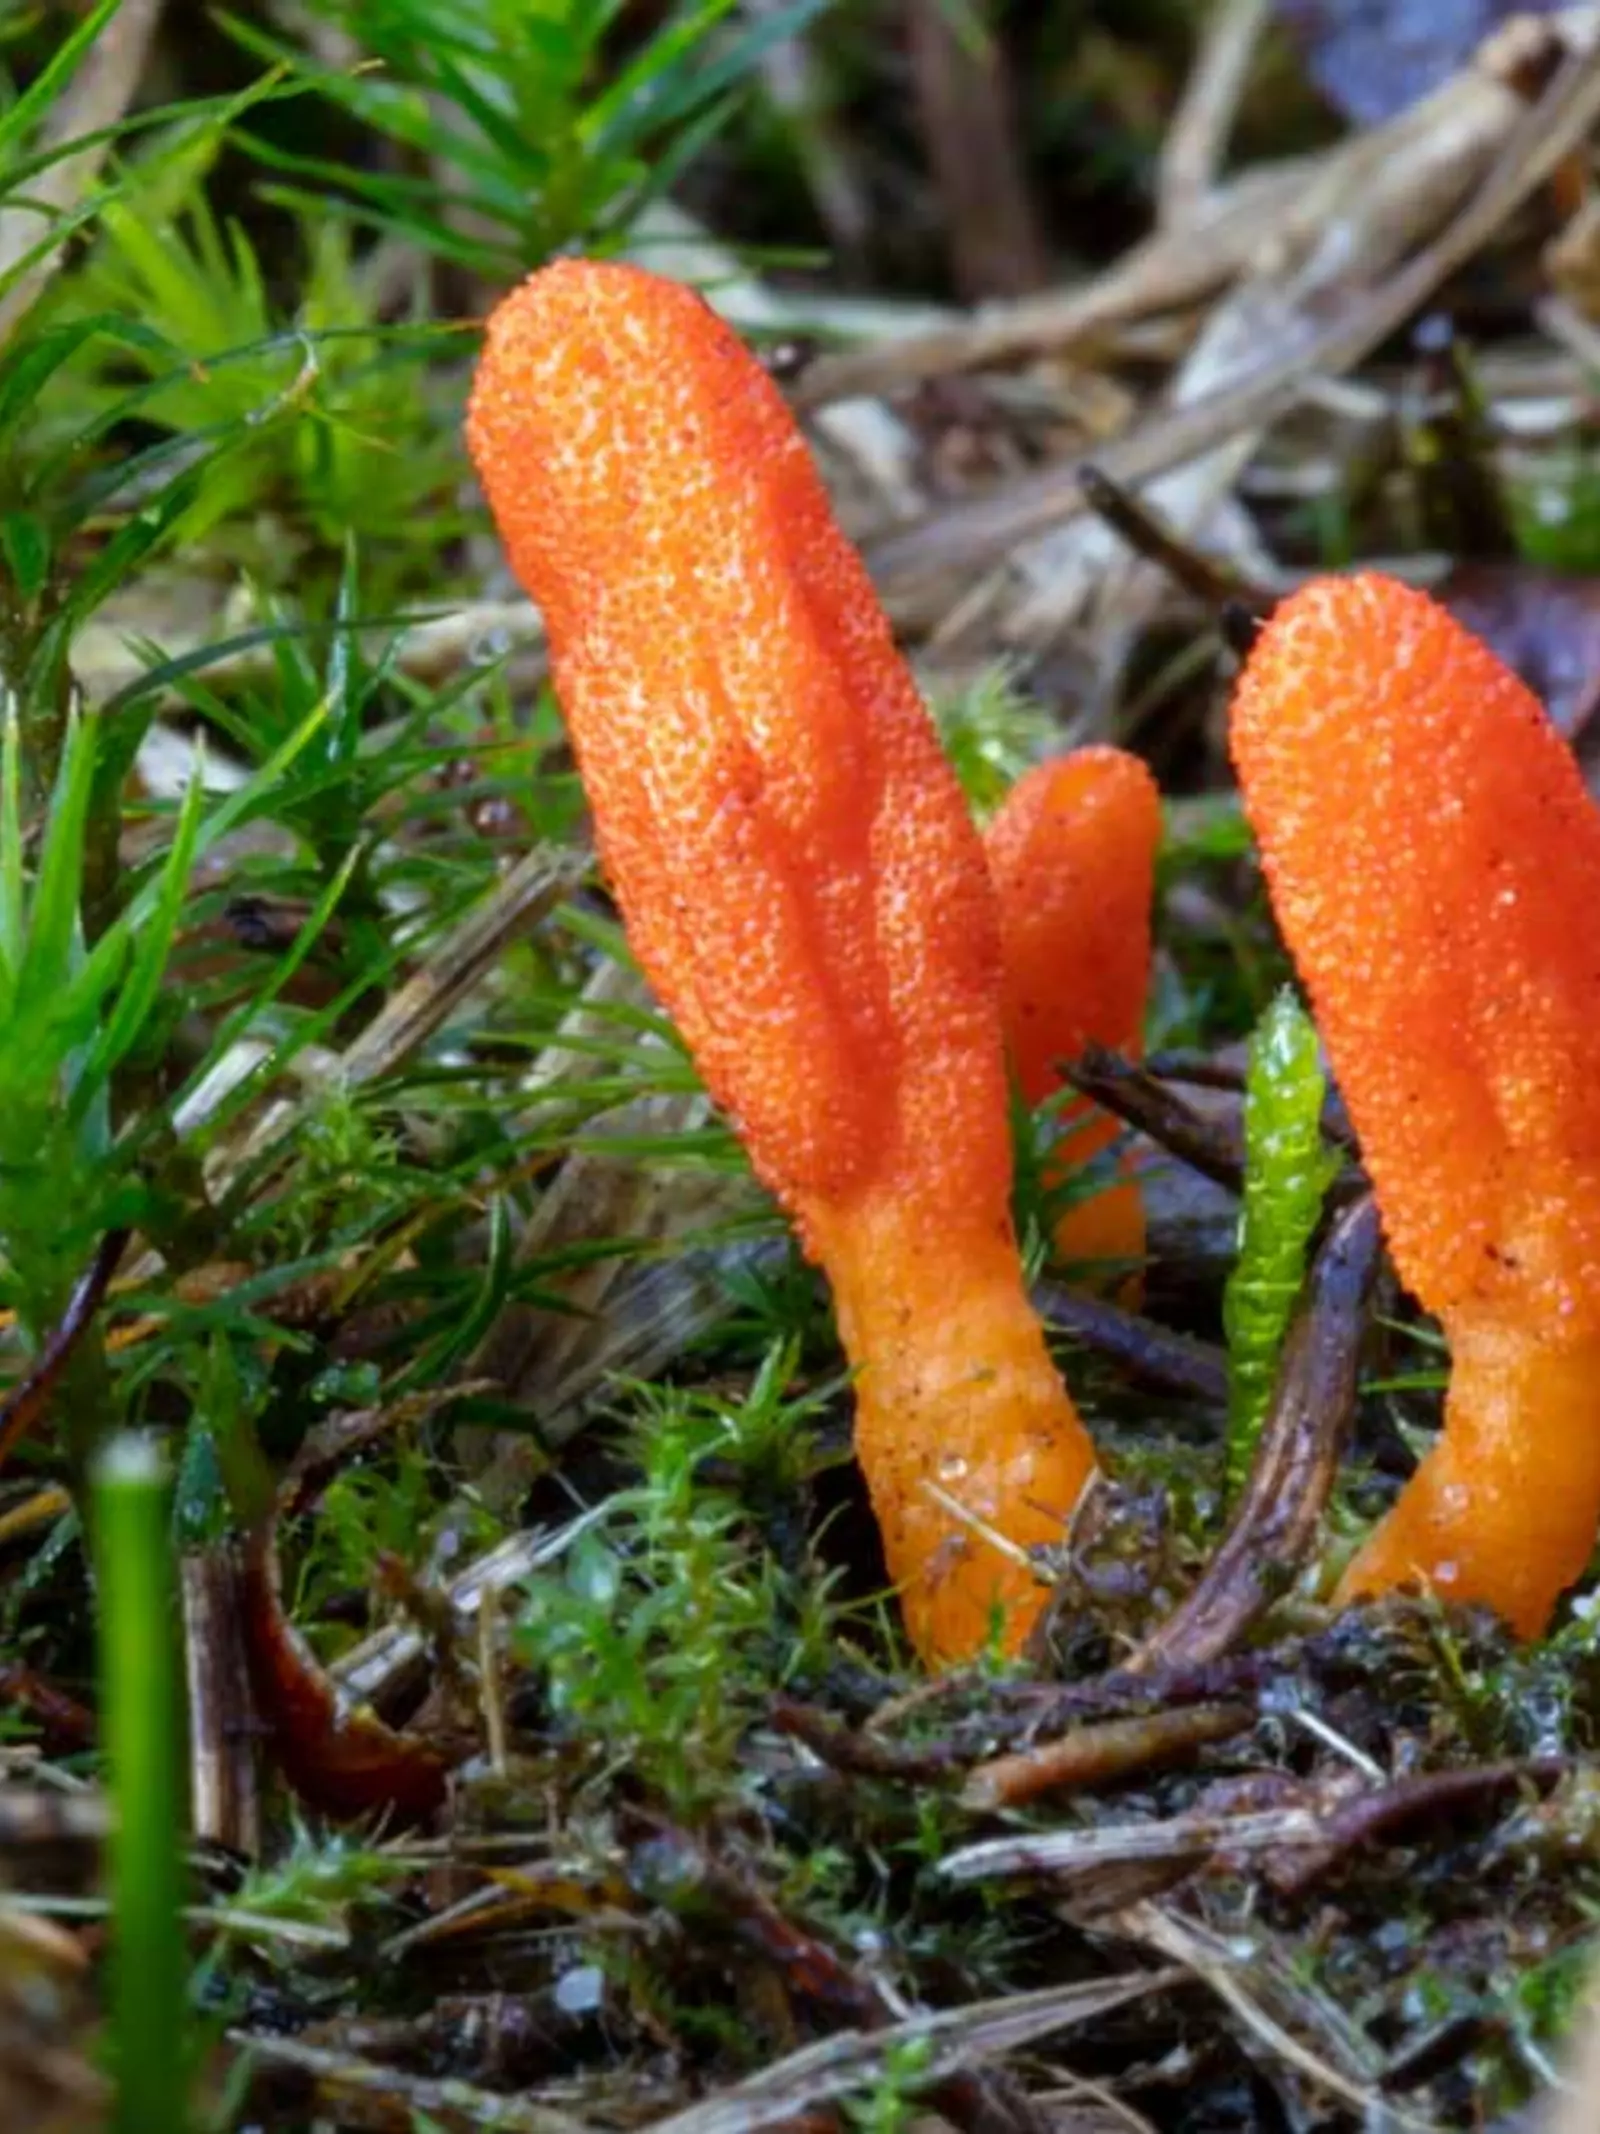 Colourful orange wild fungus